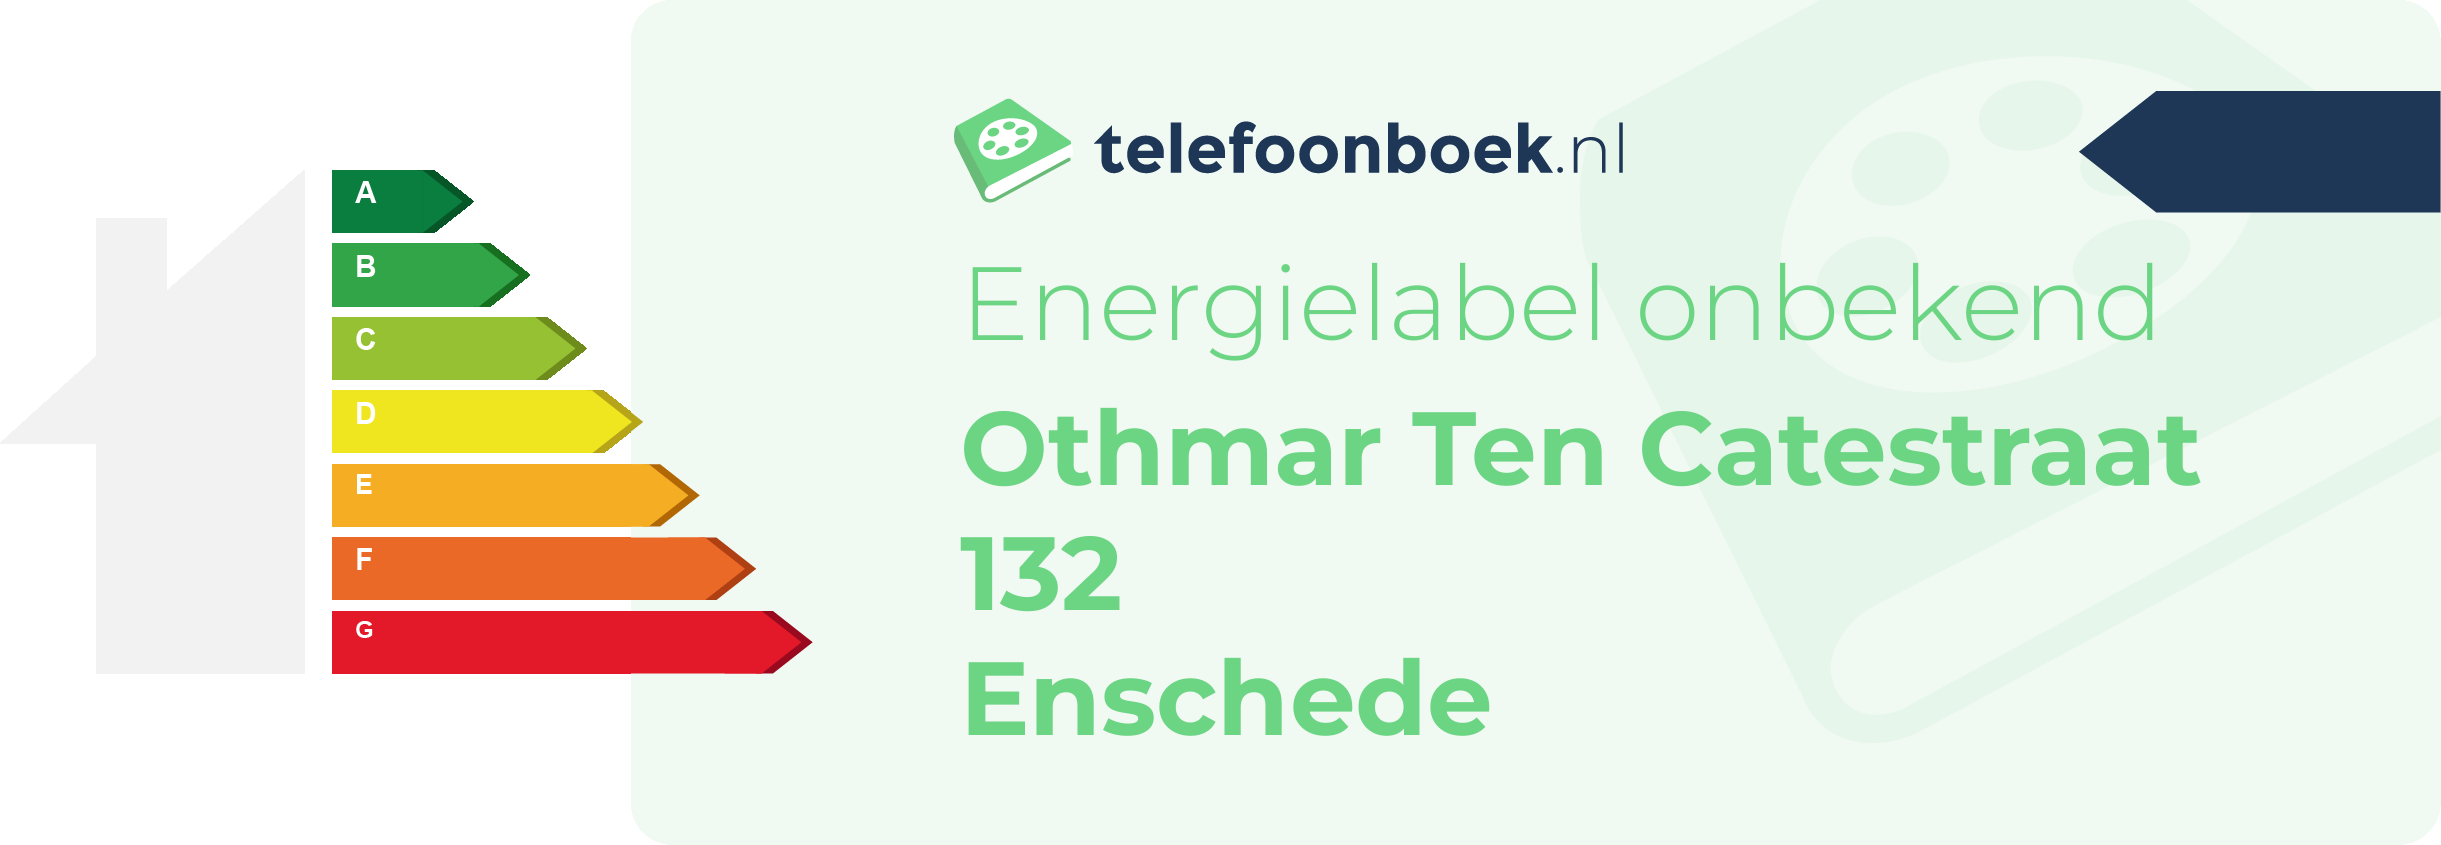 Energielabel Othmar Ten Catestraat 132 Enschede